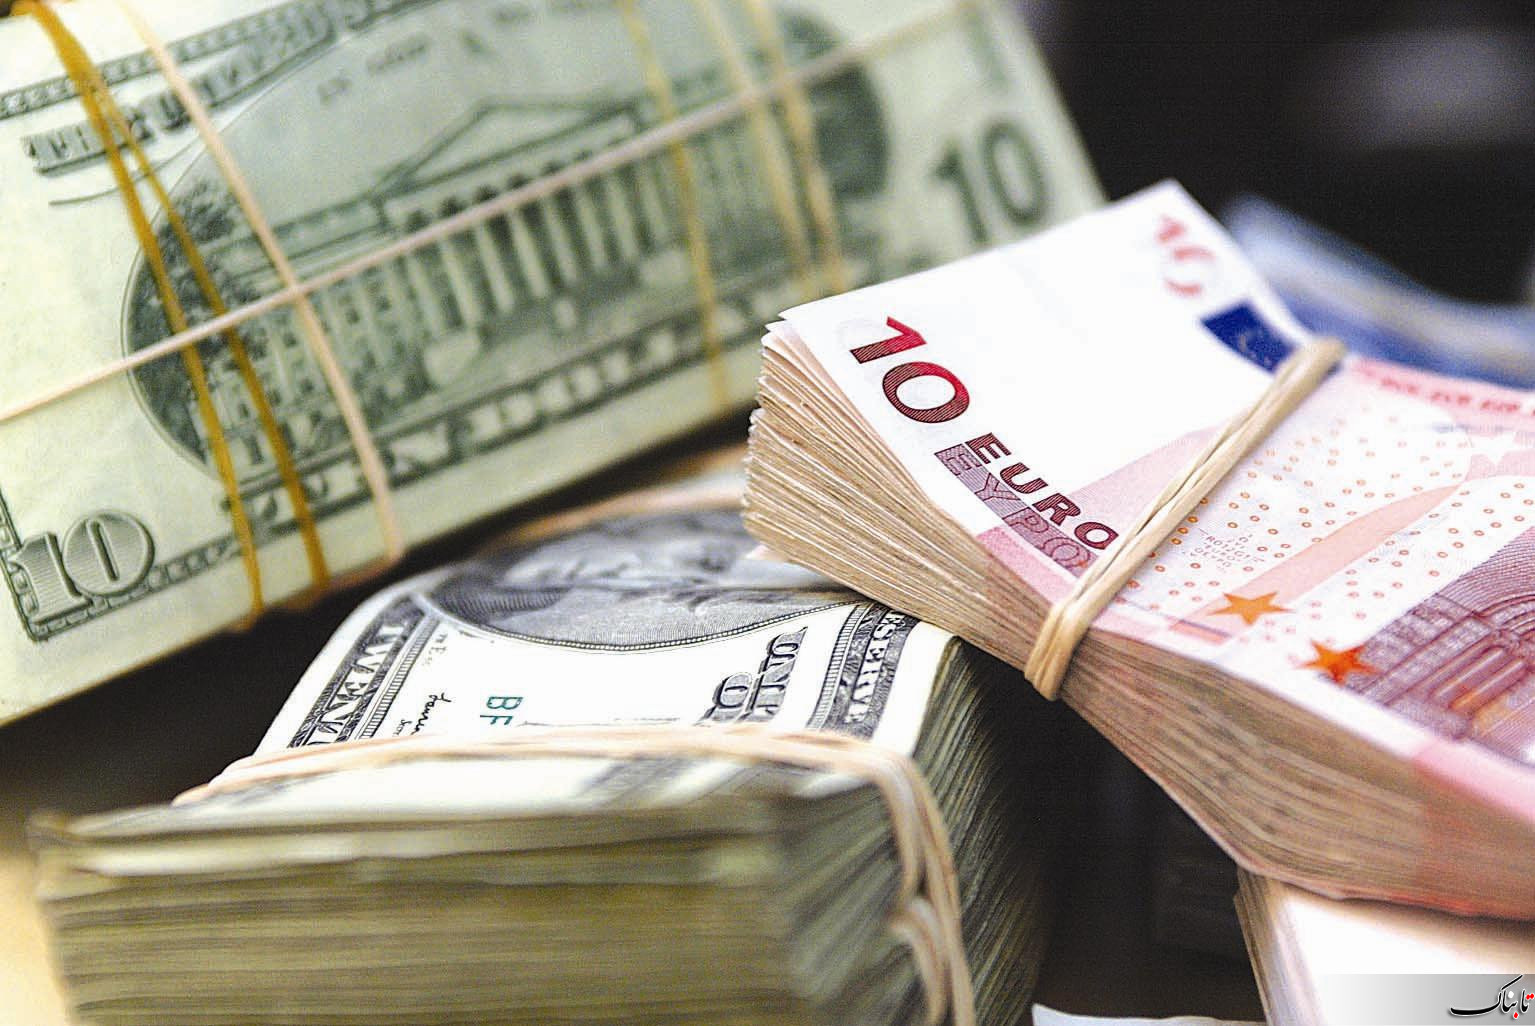 قیمت یورو و قیمت دلار در بازار امروز | یکشنبه ۱۹ خرداد ۹۸